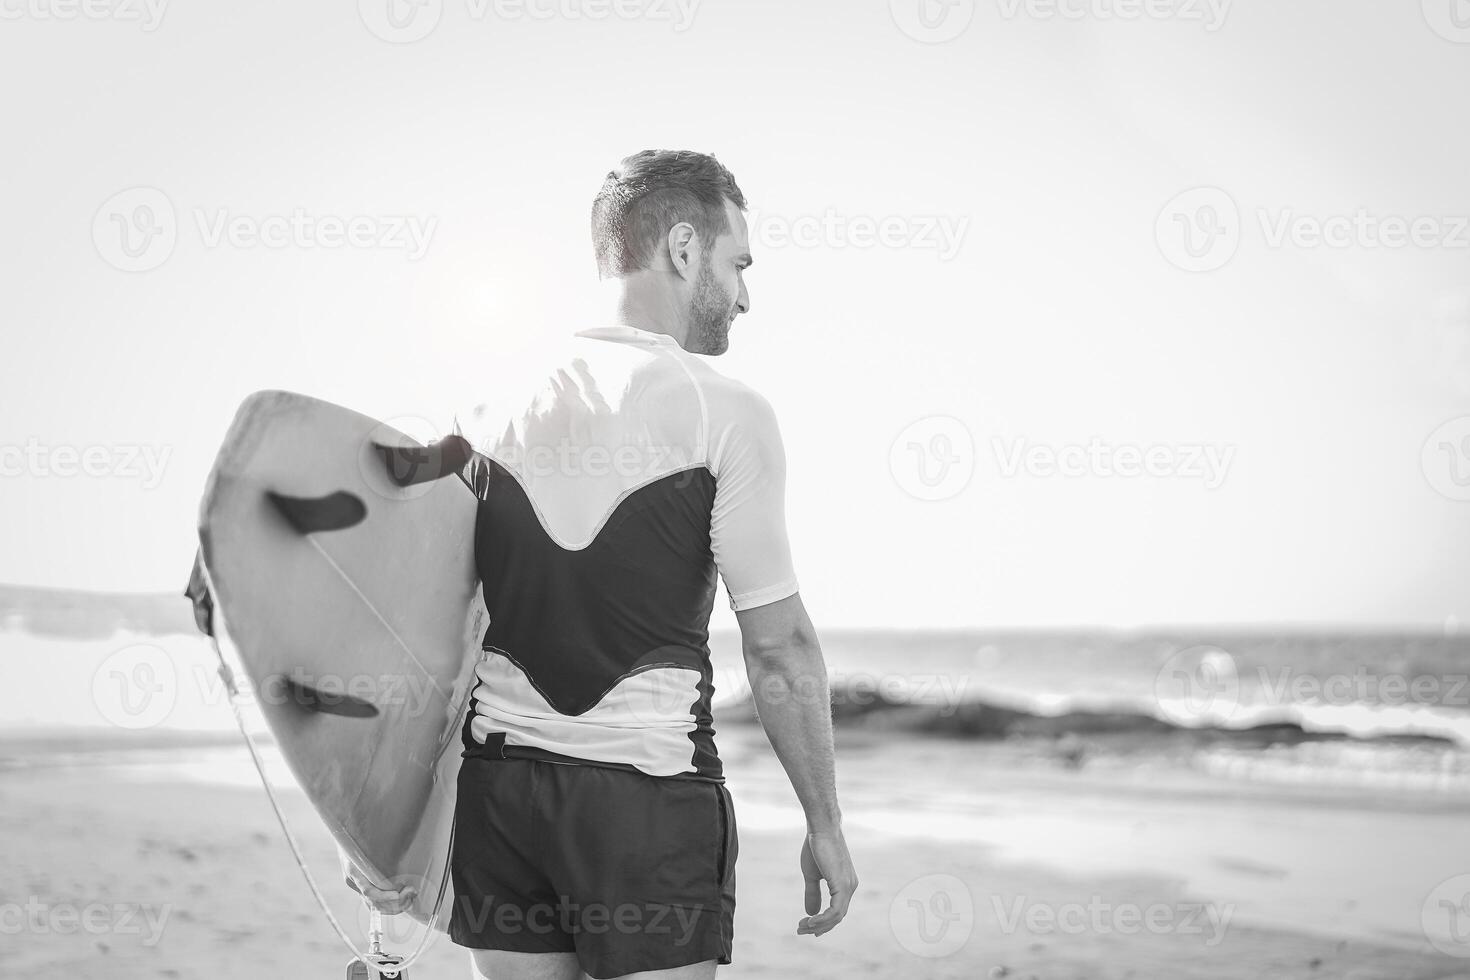 ung surfare innehav hans surfingbräda på de strand - stilig man väntar vågor för surfing - svart och vit redigering - människor, sport och livsstil begrepp foto